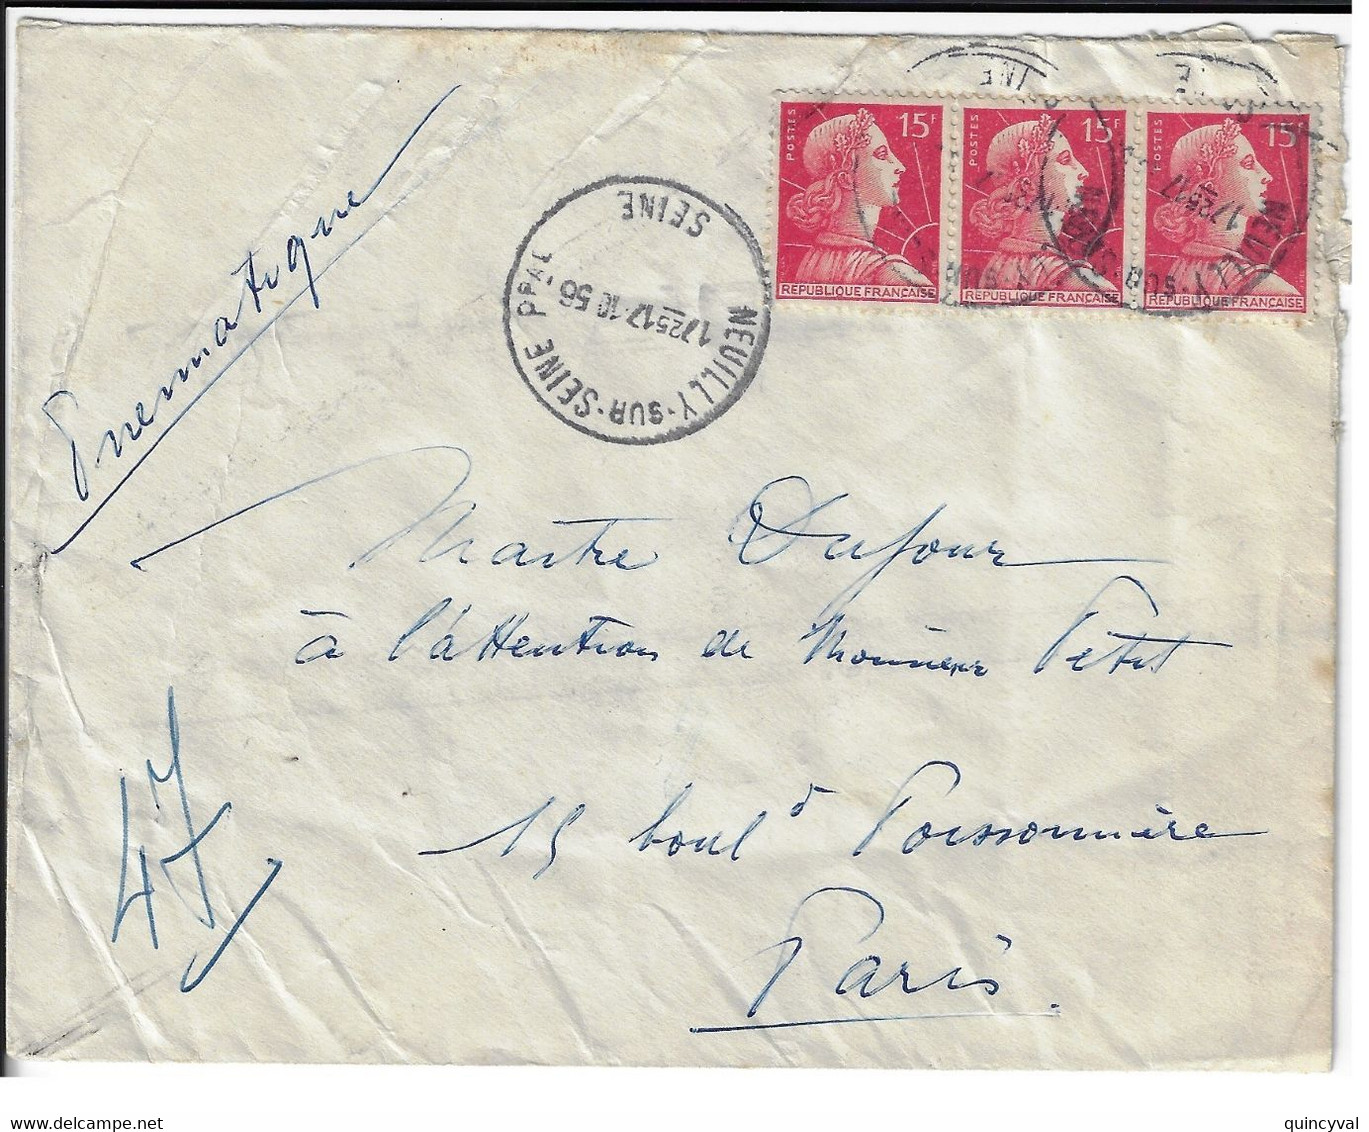 NEUILLY Sur SEINE Enveloppe Pneumatique 15 F Muller Rouge Yv 1011 Dest Paris 47 Via Paris Bourse PN Ob 17 10 1956 - Briefe U. Dokumente